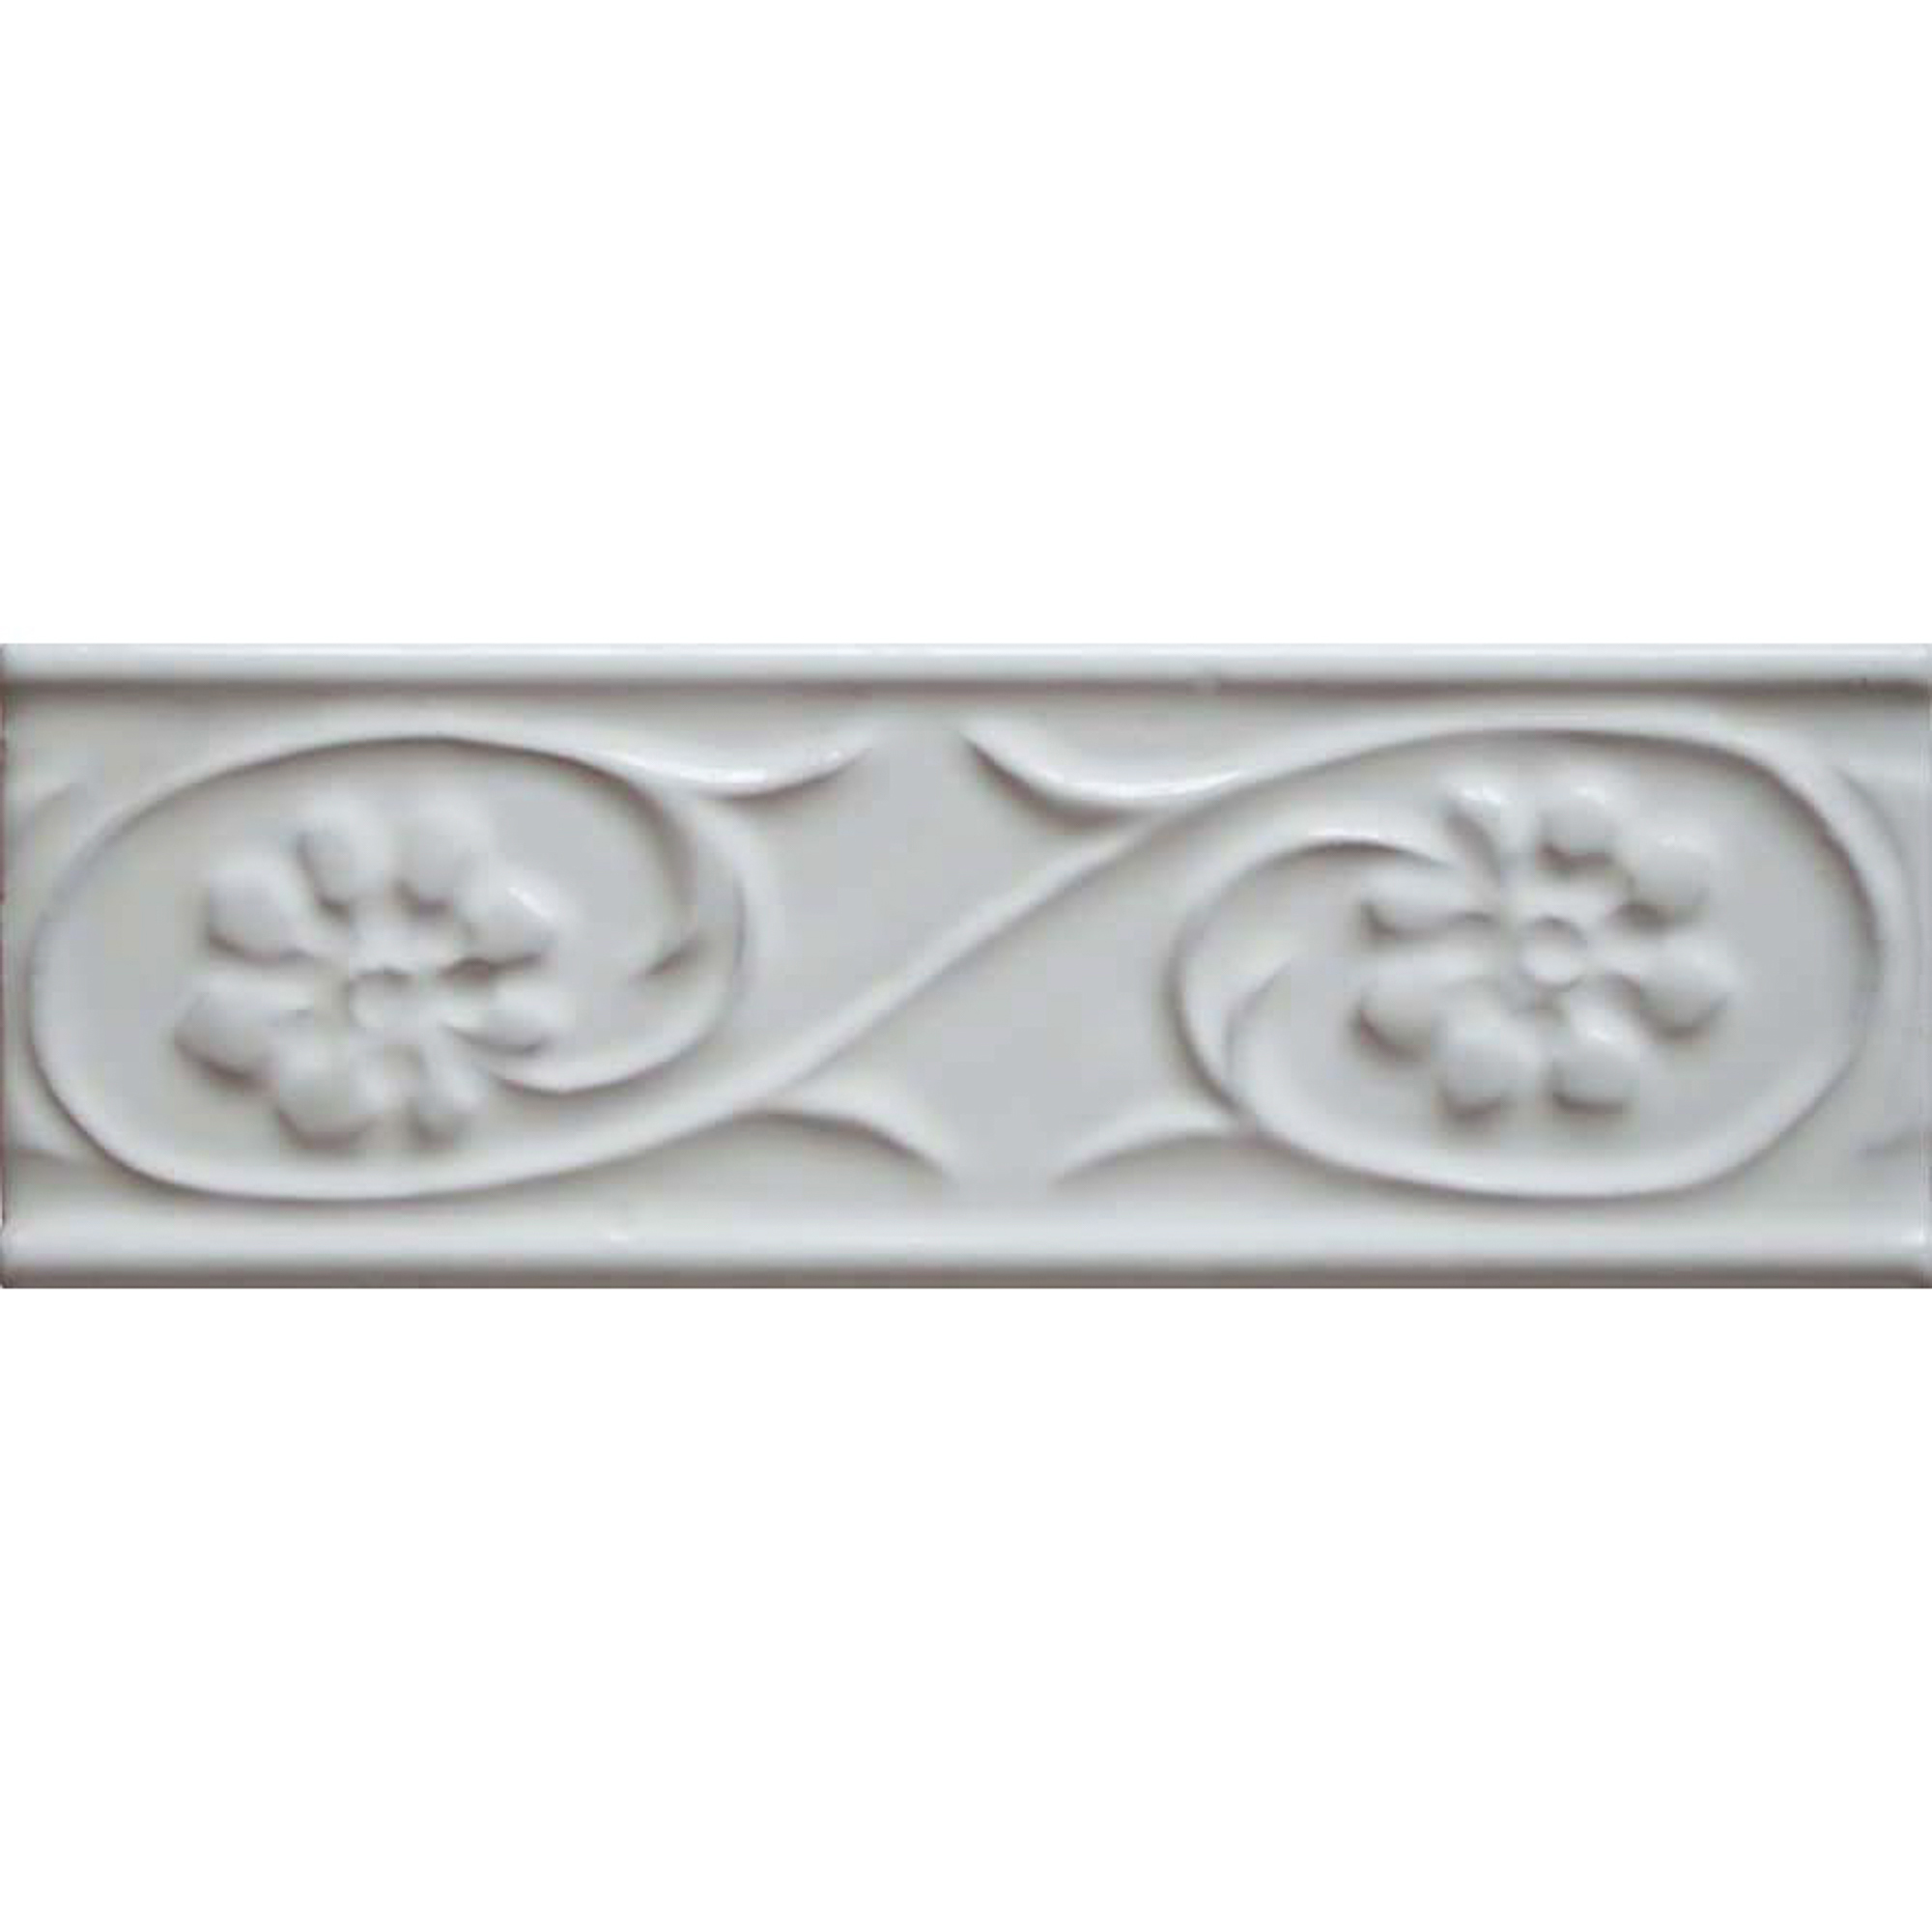 настенная плитка adex neri biselado pb blanco z 7 5x15 Бордюр Bellavista Biselados Blanco 5x15 см